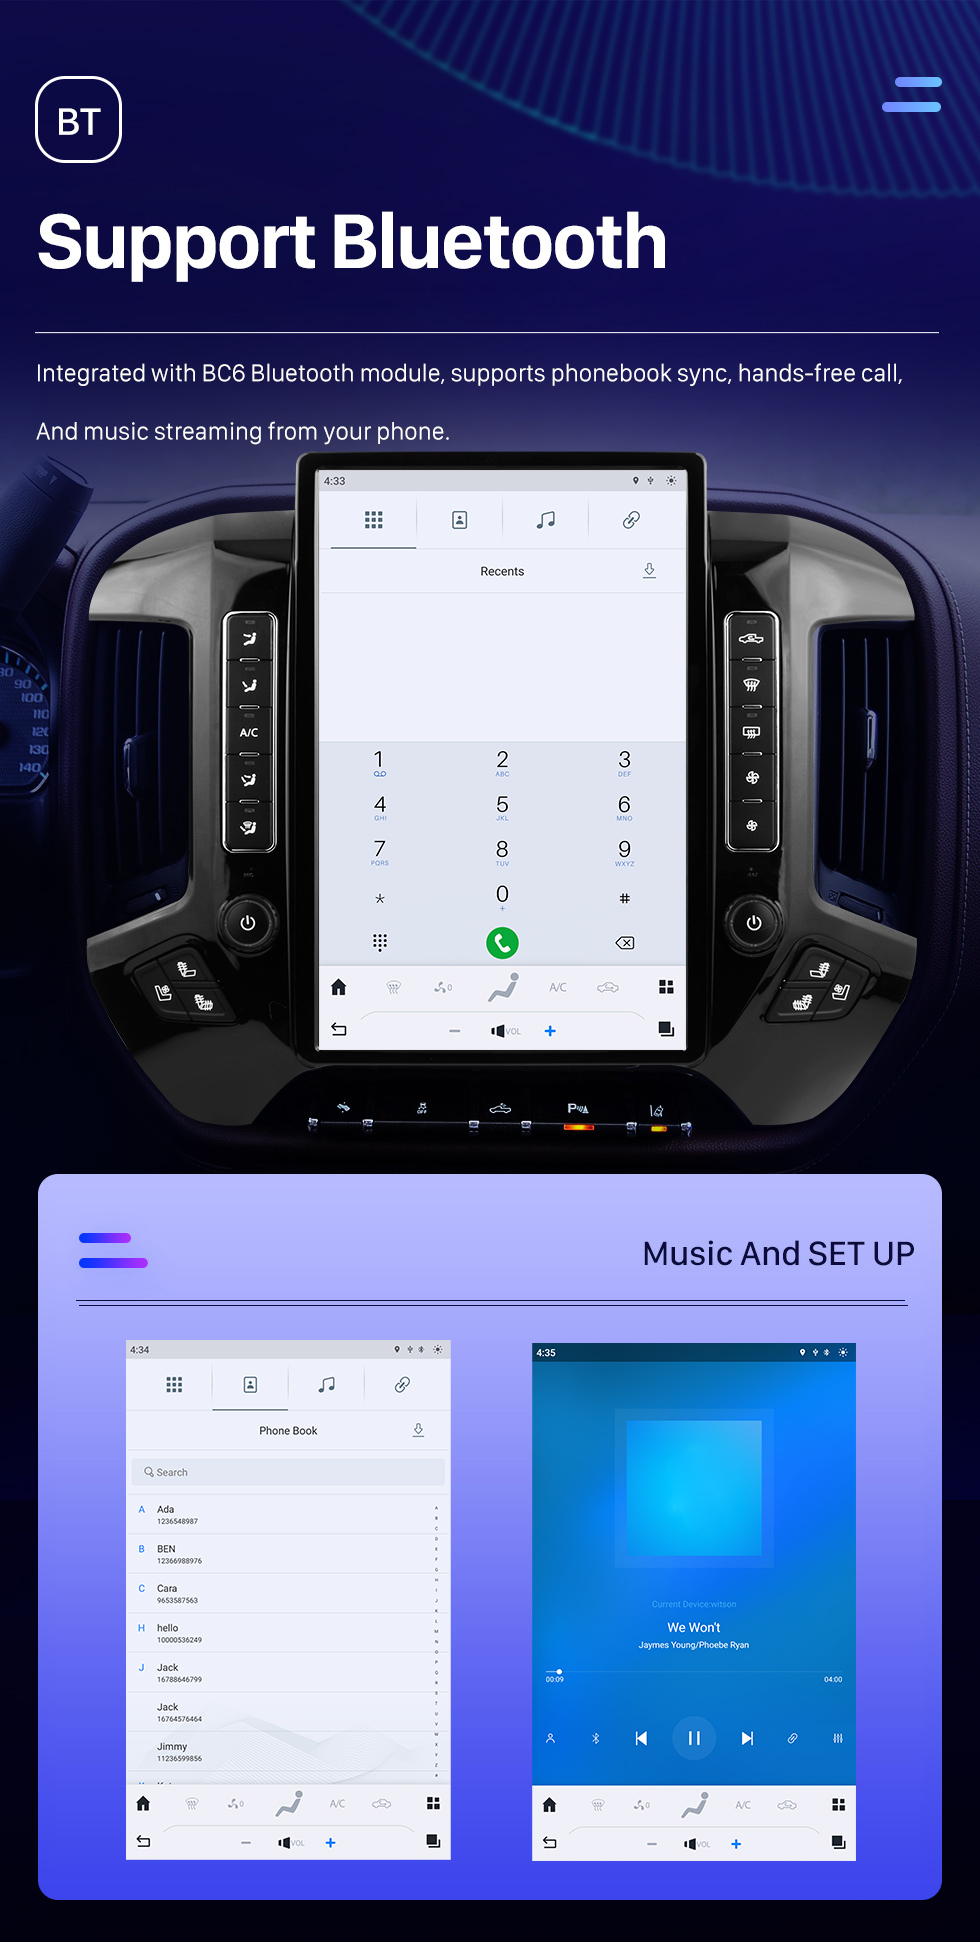 Seicane Rádio de navegação GPS Android 12.0 de 14,4 polegadas para 2014 2015 2016-2018 Chevrolet Silverado com tela sensível ao toque HD Bluetooth Carplay suporte DVR TPMS